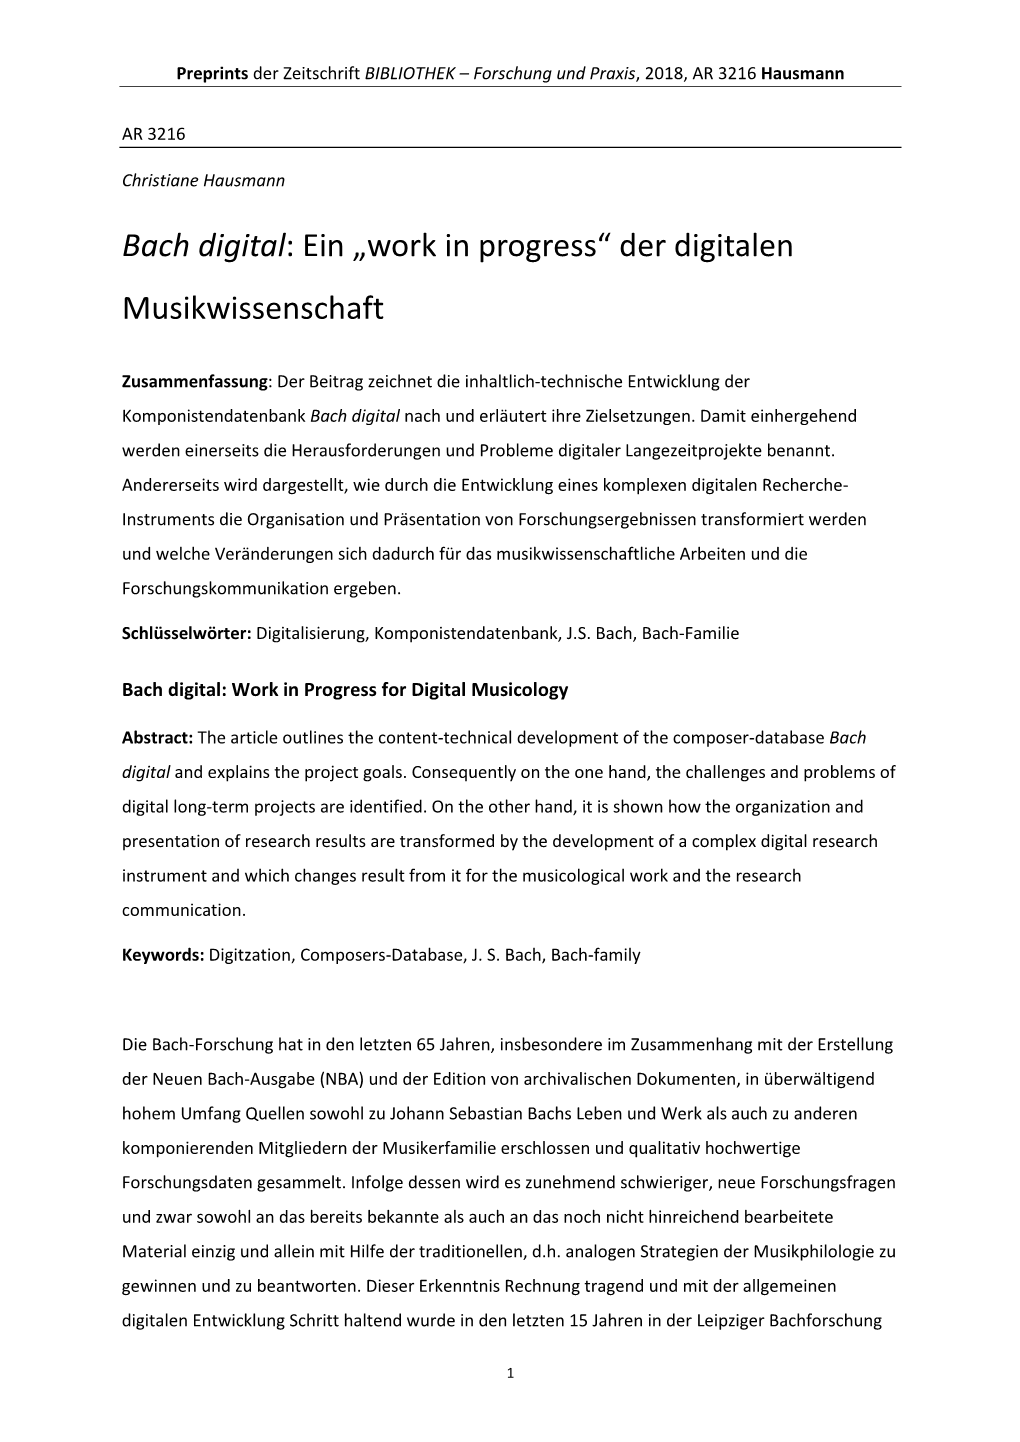 Bach Digital: Ein „Work in Progress“ Der Digitalen Musikwissenschaft